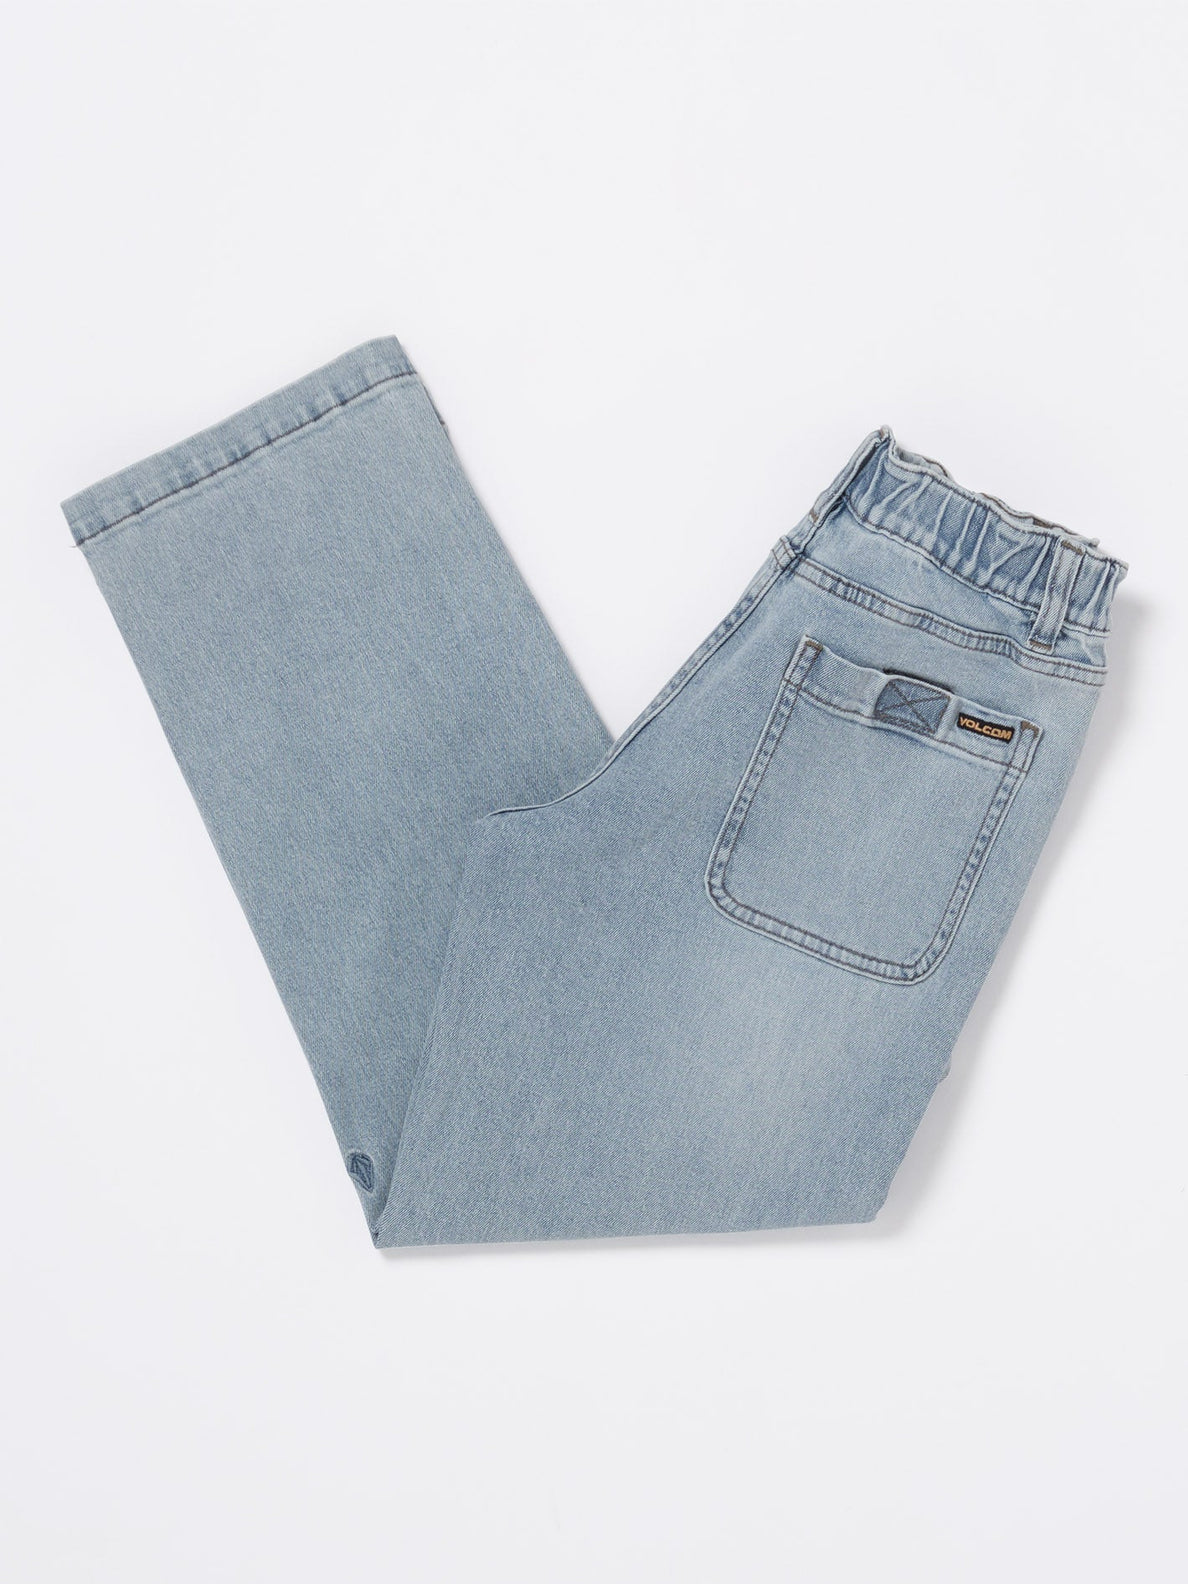 Krafter Reinforced Jeans - DESERT DIRT INDIGO - (KIDS) (C1912430_DDN) [B]